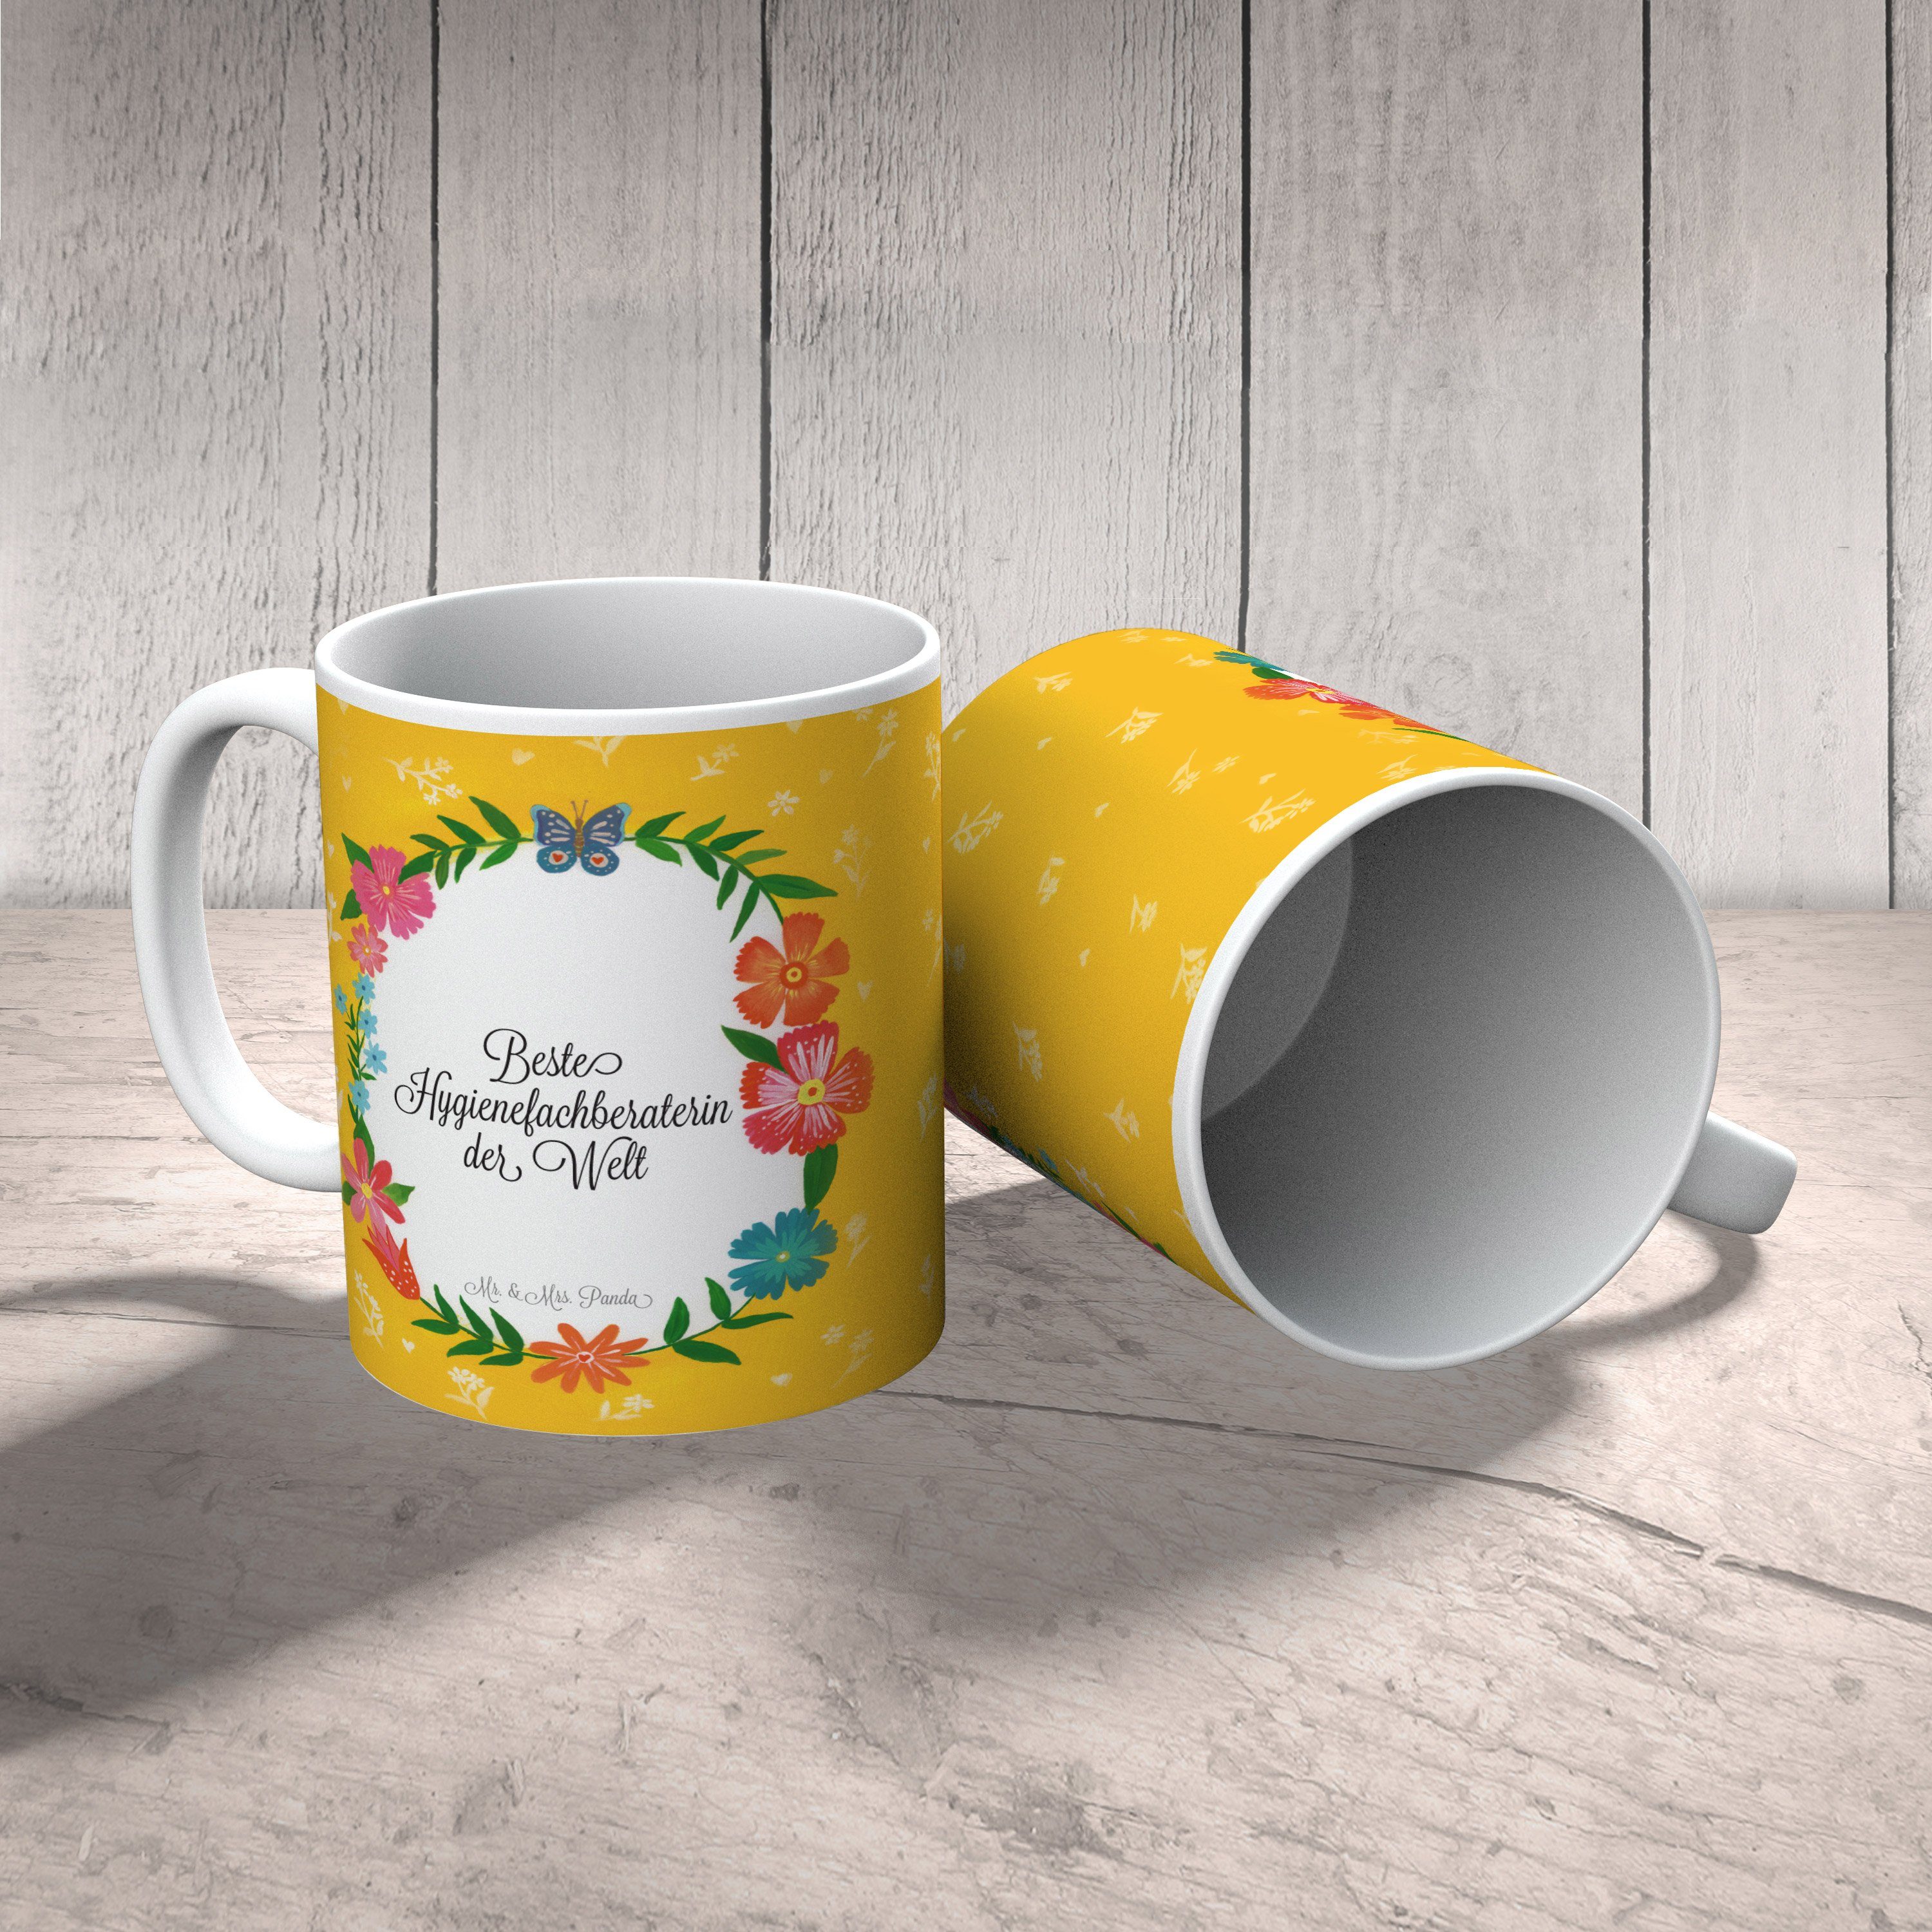 Mr. & Mrs. Panda Geschenk, - Keramik Tasse, Geschenk Kaffeebech, Tasse Schenken, Hygienefachberaterin